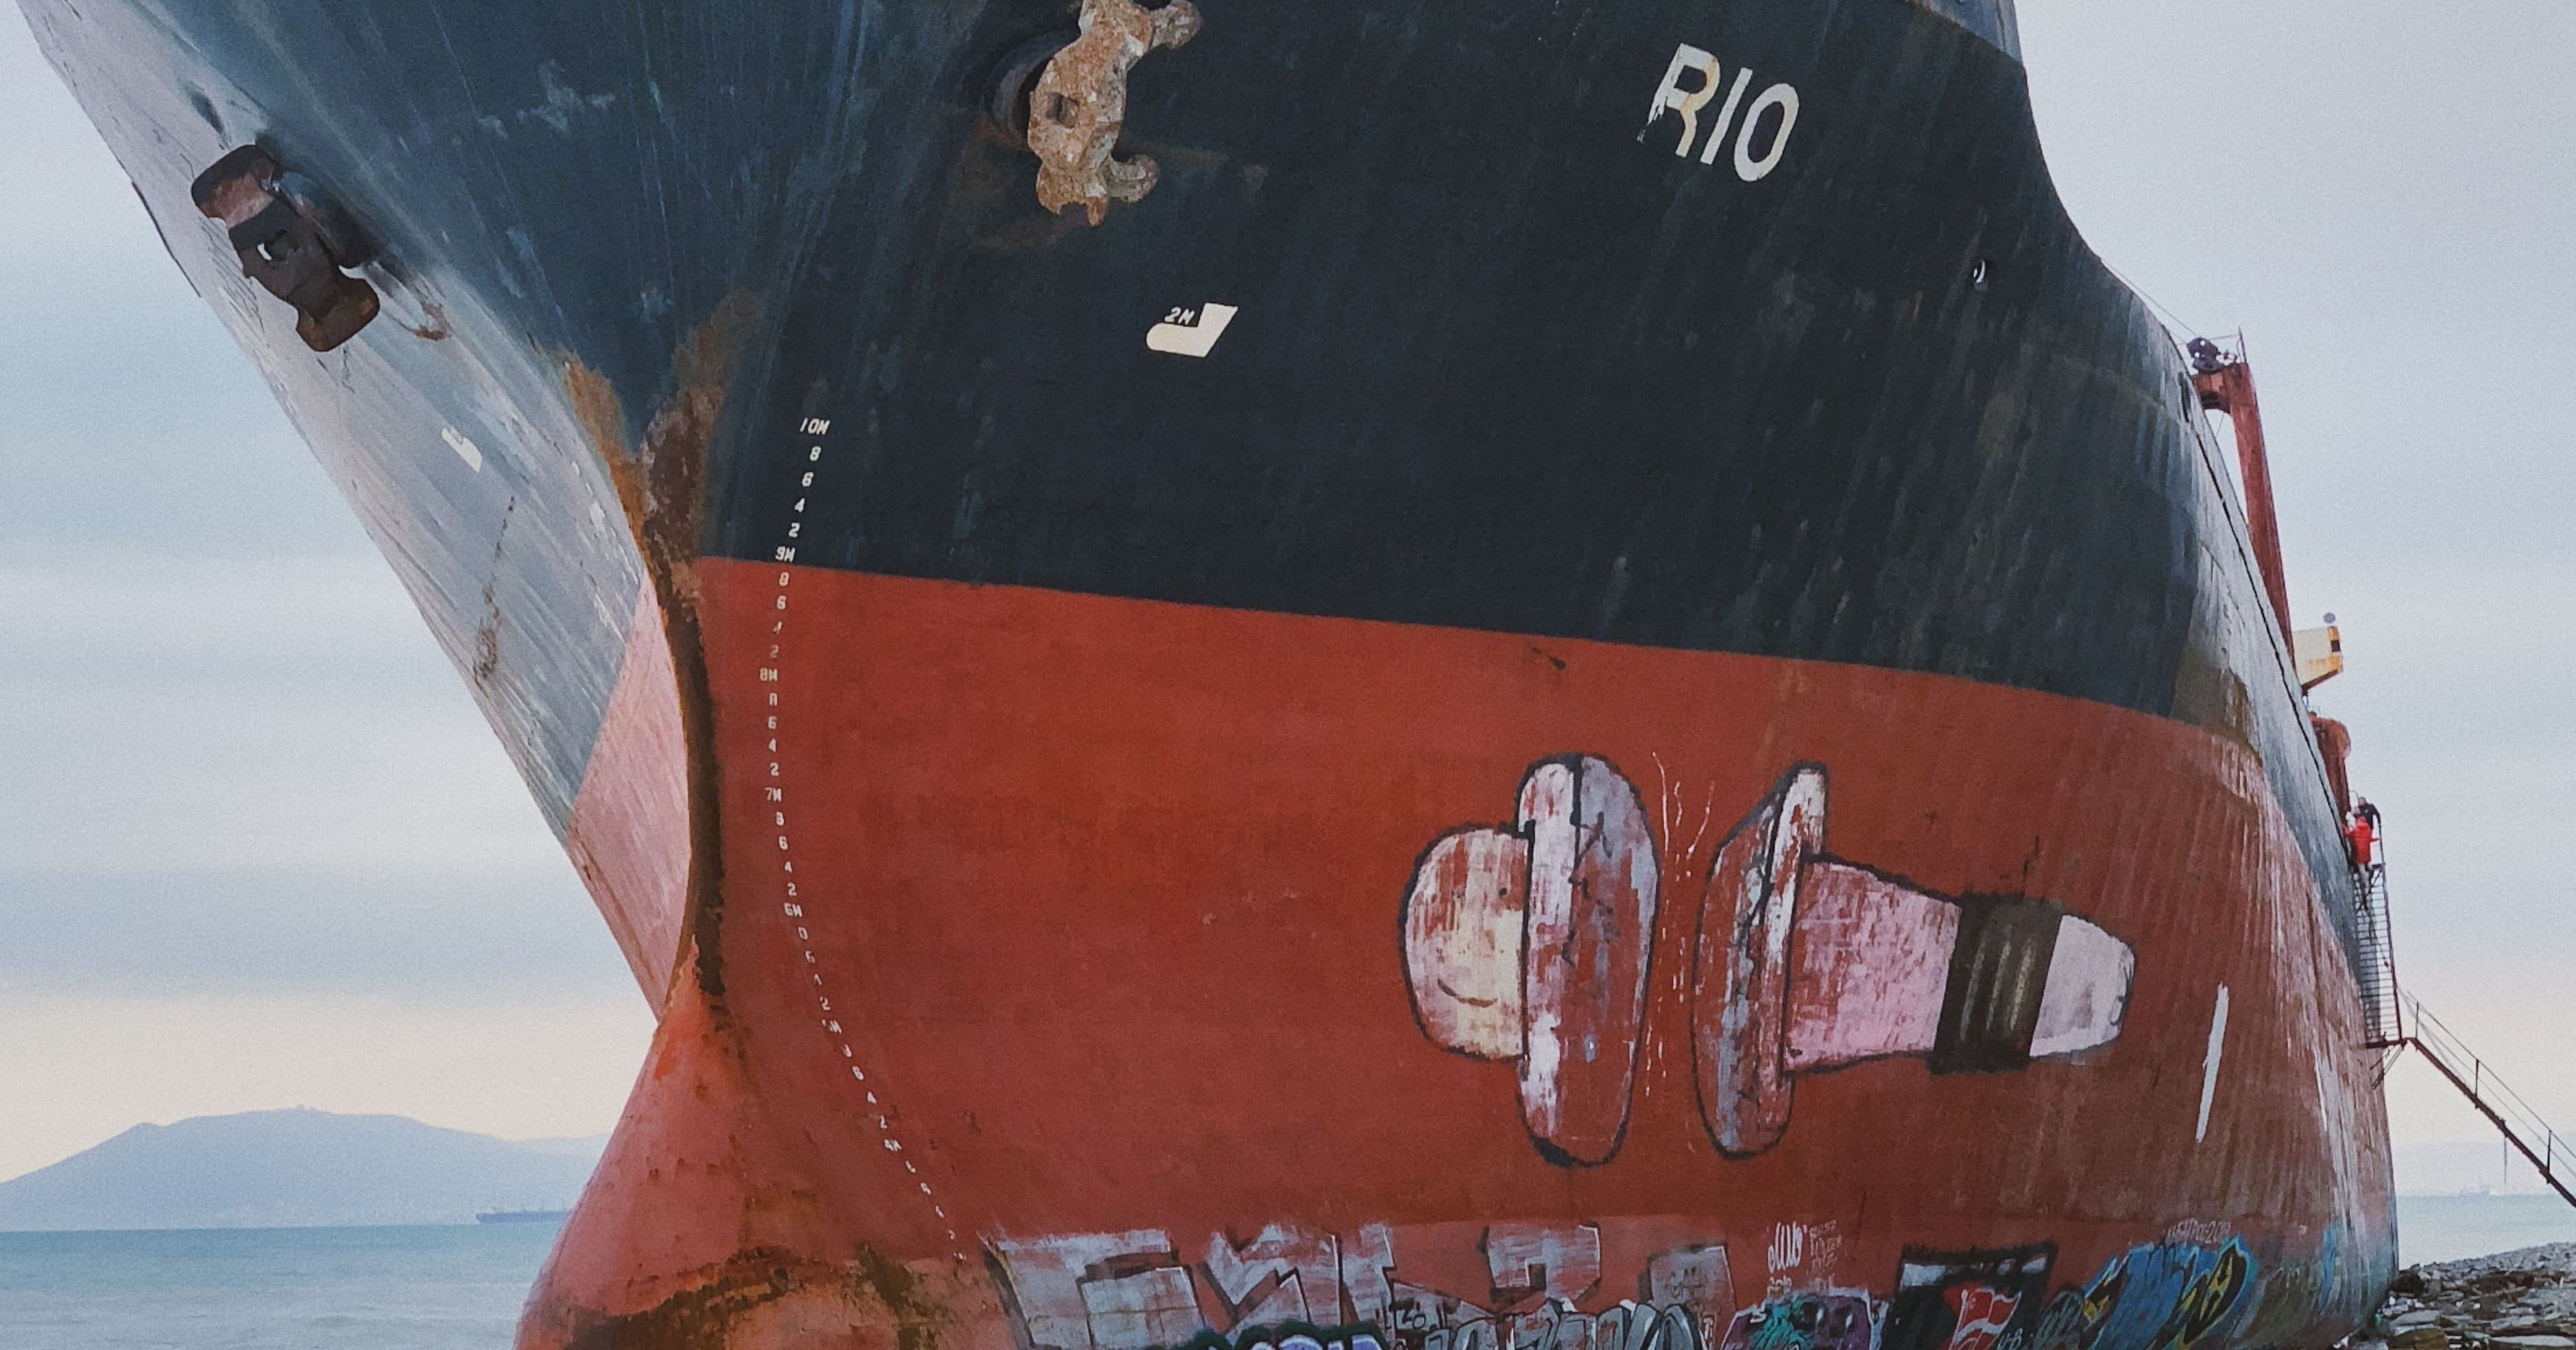  Hemmeligheten avslørt: hvorfor er skipsskrog malt rødt?